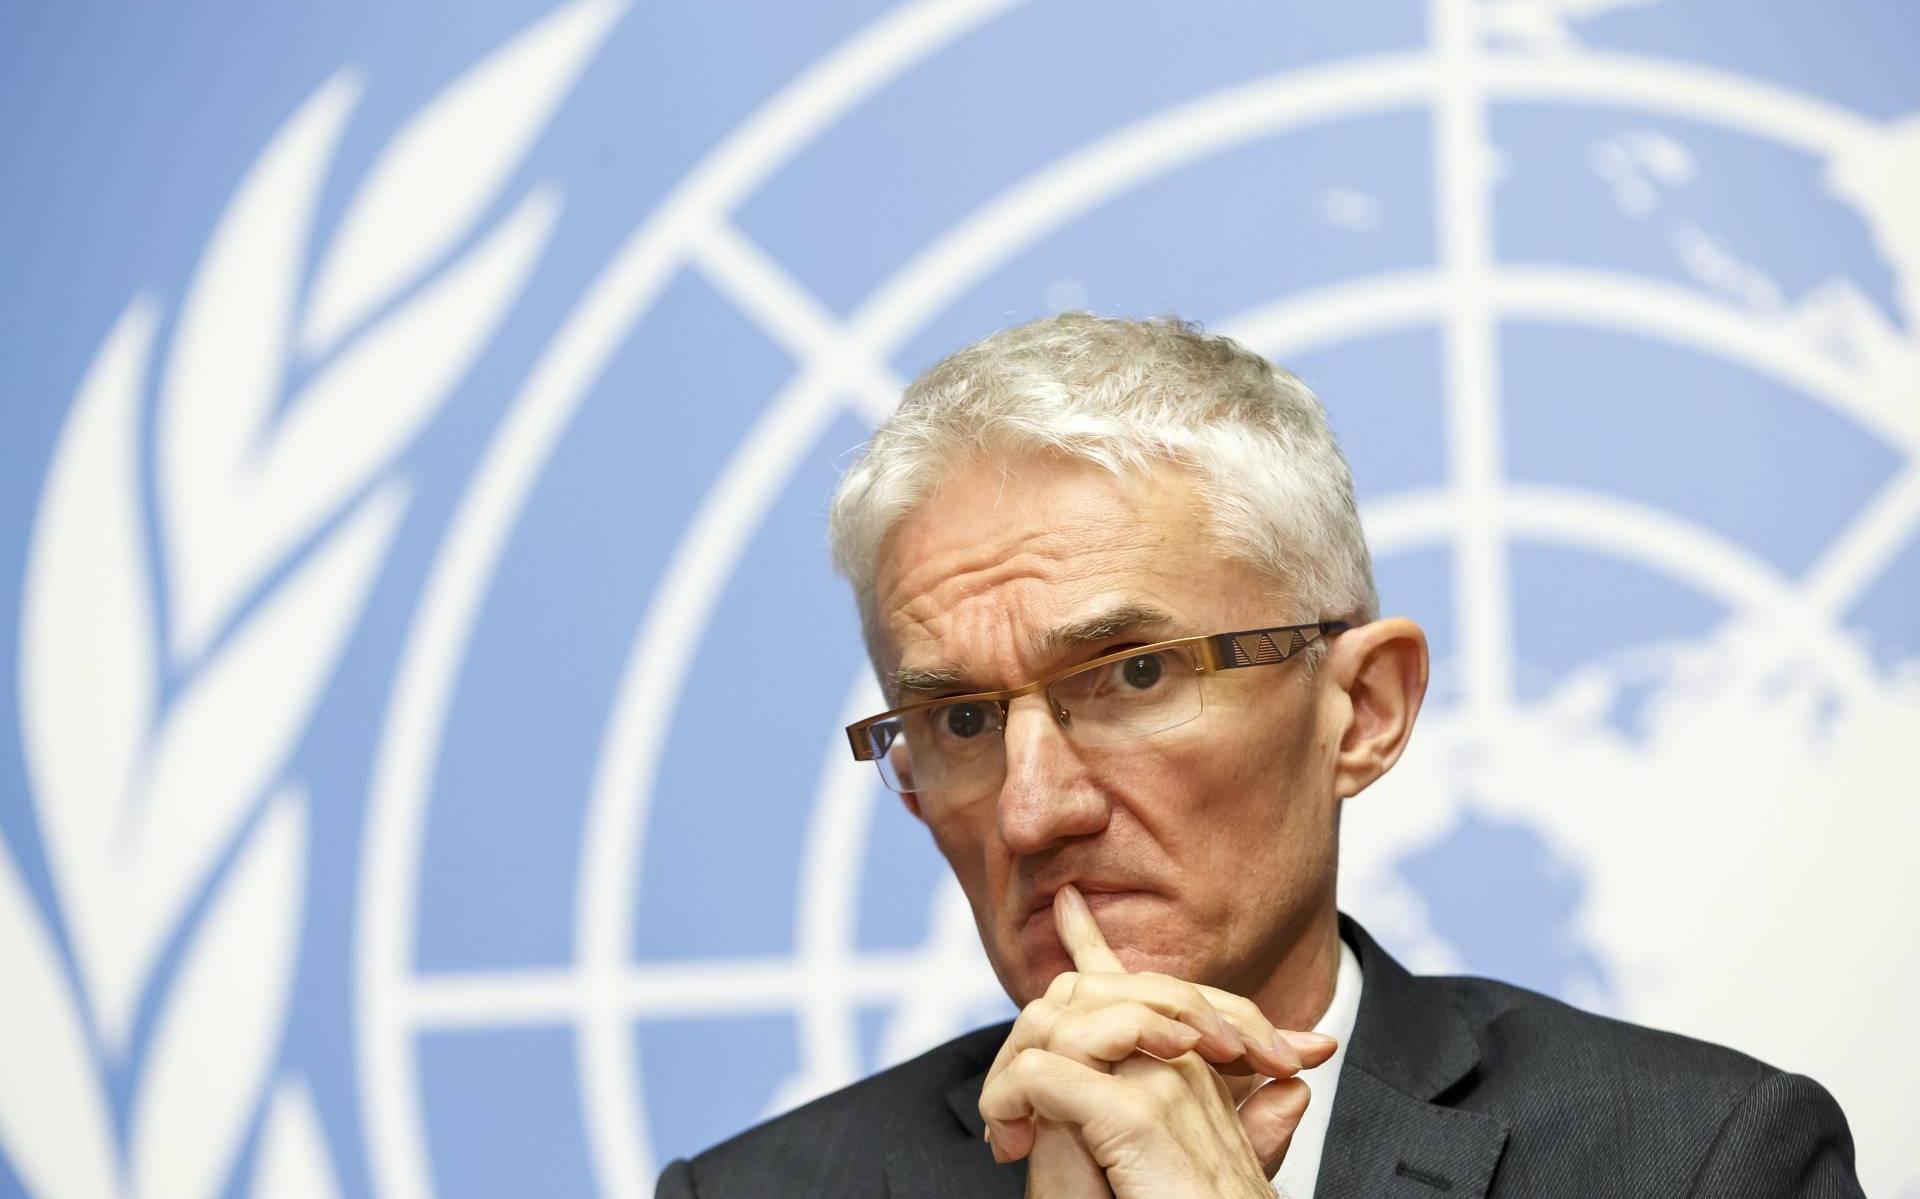 VN-diplomaten: pandemie verergert conflicten wereldwijd